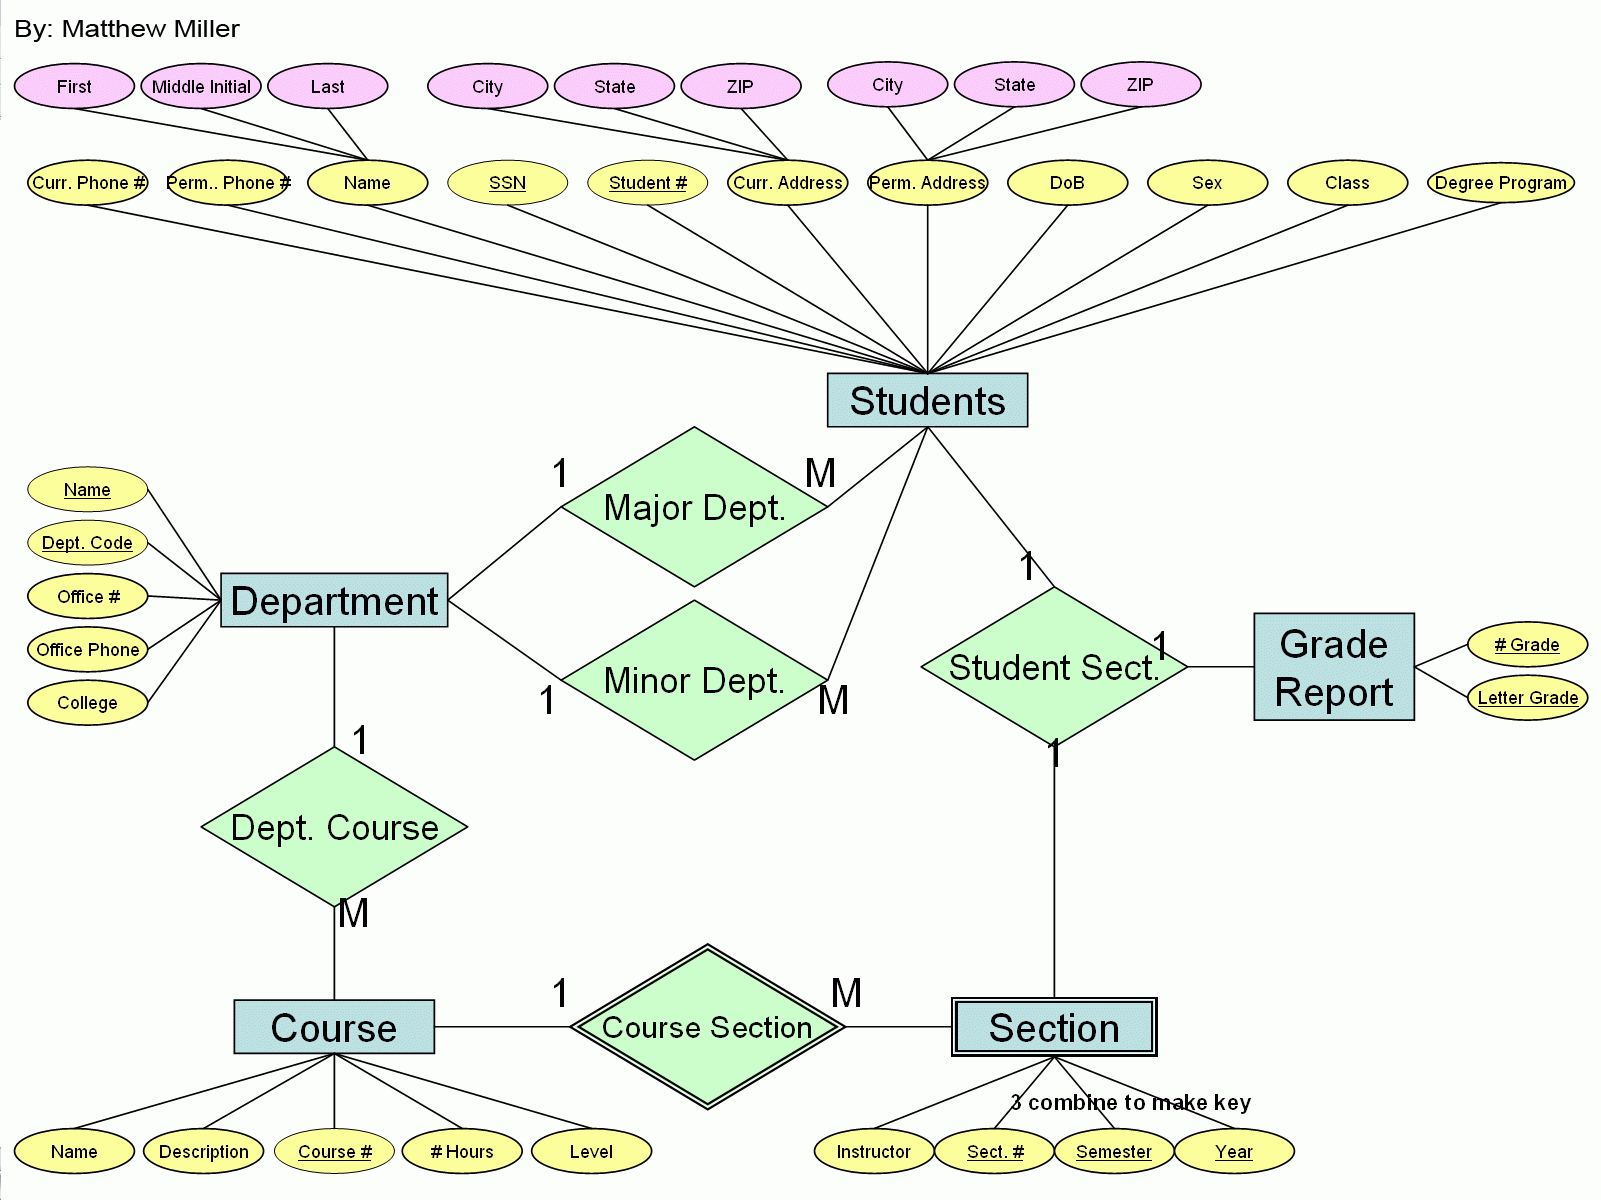 Matthew Miller | Gis Portfolio in Er Diagram For University Database